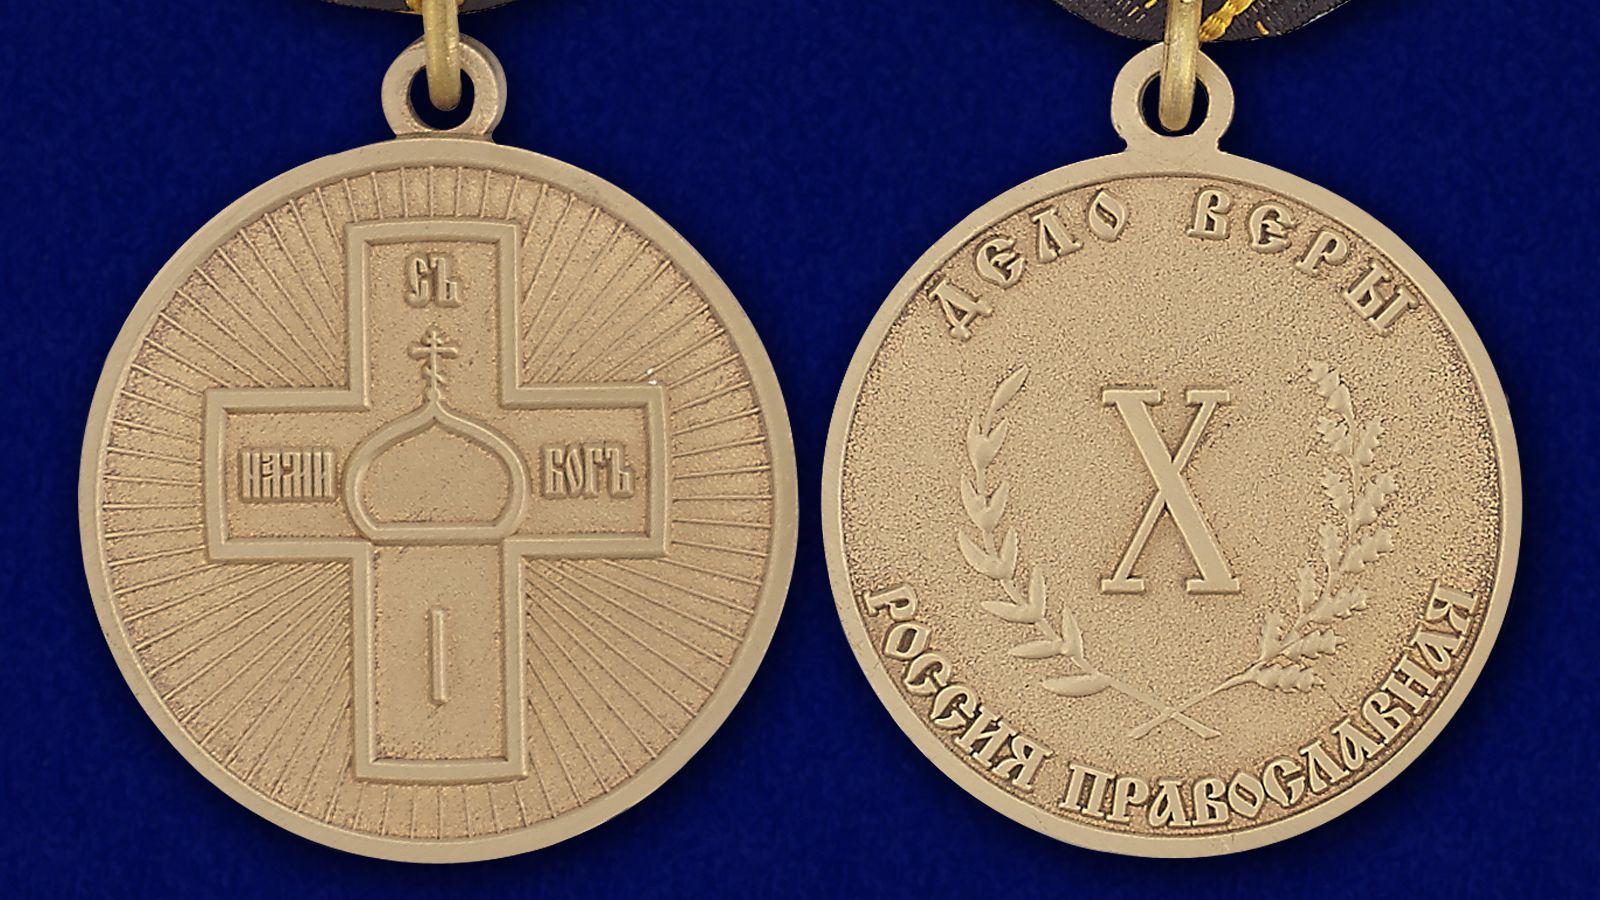 Православная медаль "Дело Веры" 3 степени 